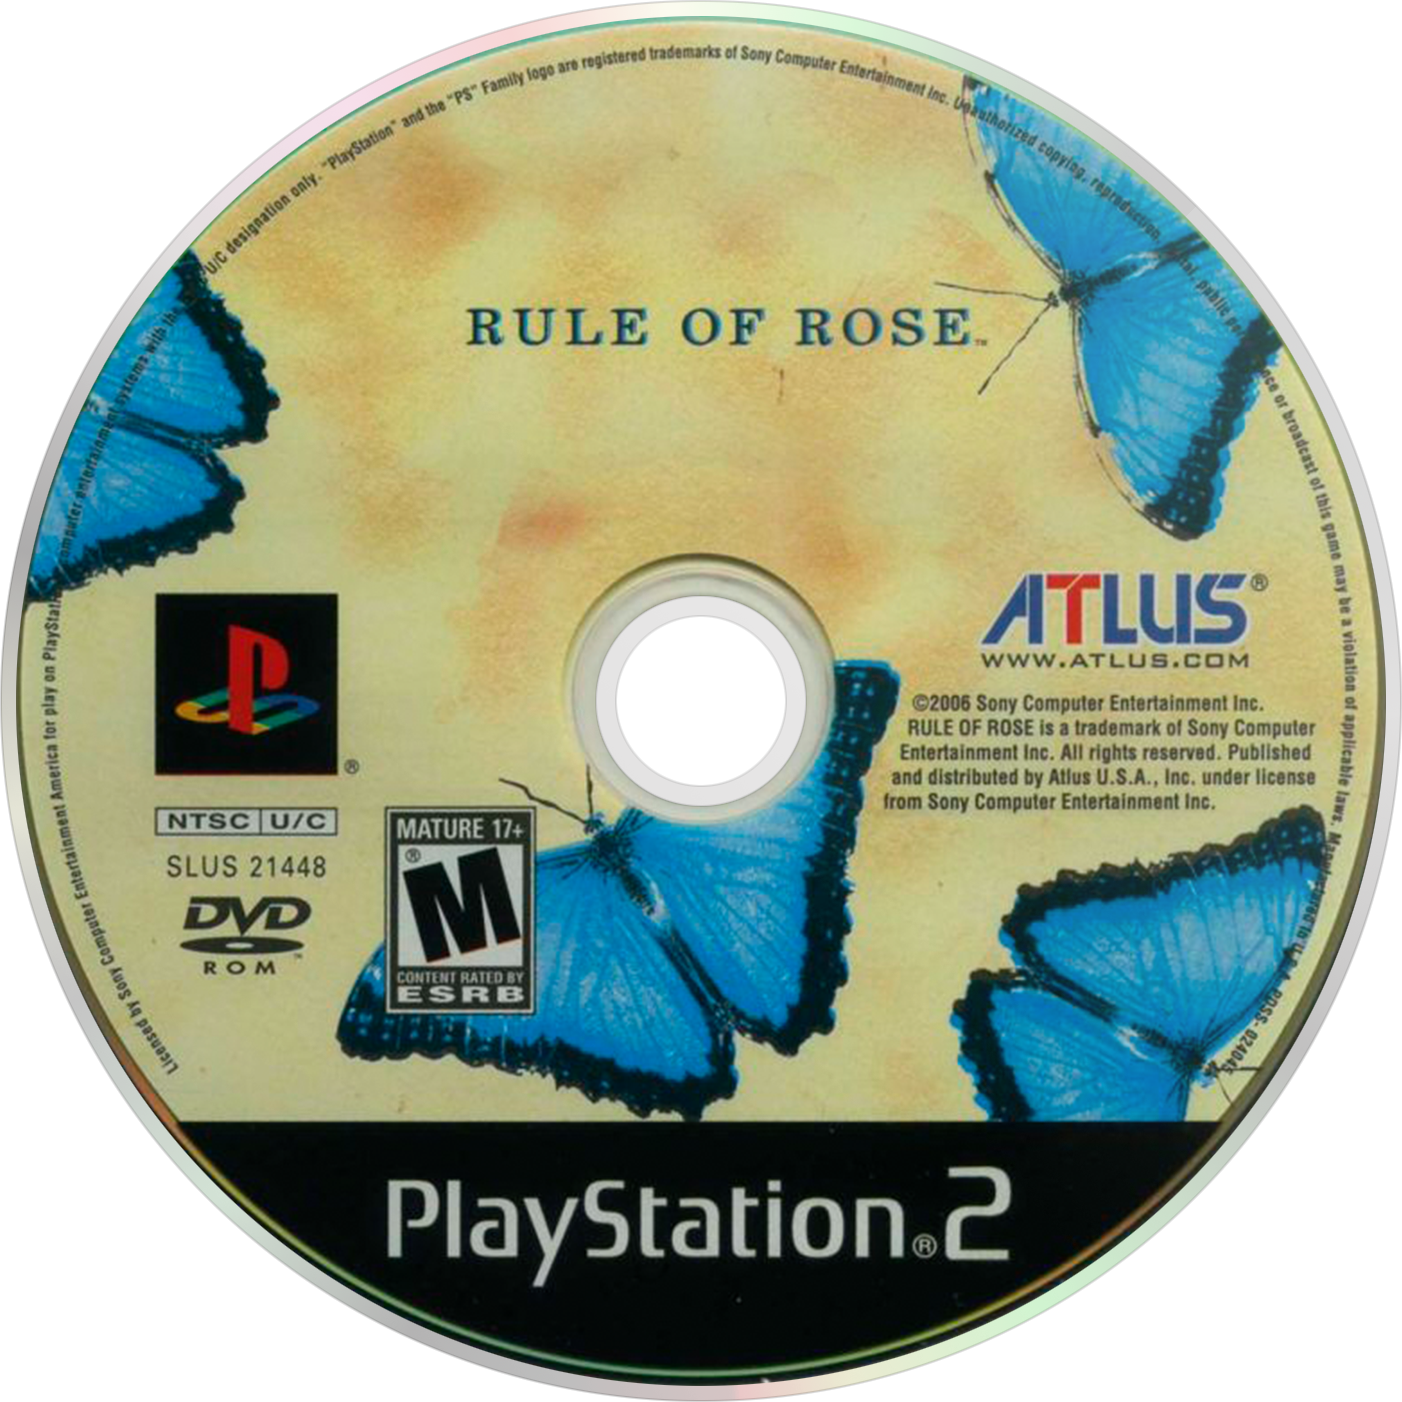 Rule of rose steam фото 49